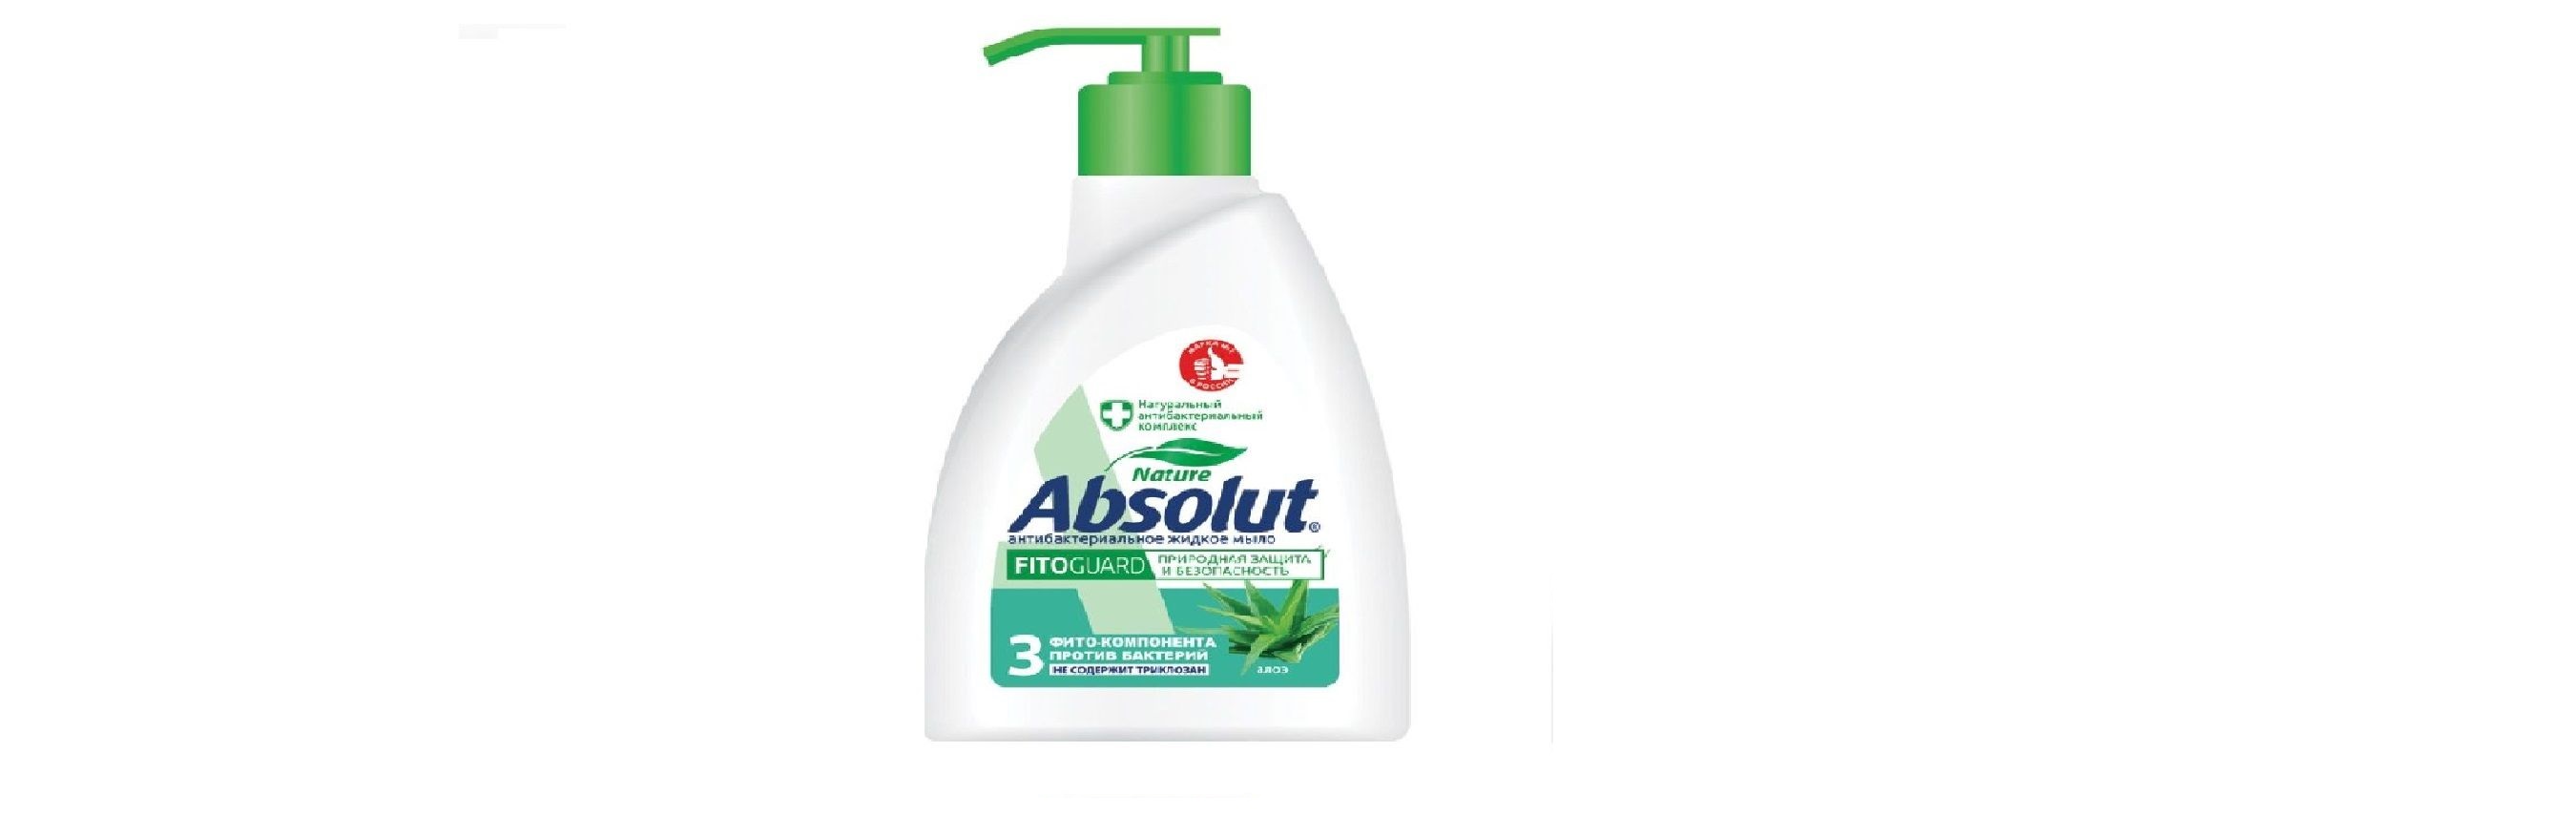 Мыло жидкое Absolut Алоэ Антибактериальное 250 мл 6 штук мыло жидкое absolut алоэ антибактериальное 250 мл 6 штук